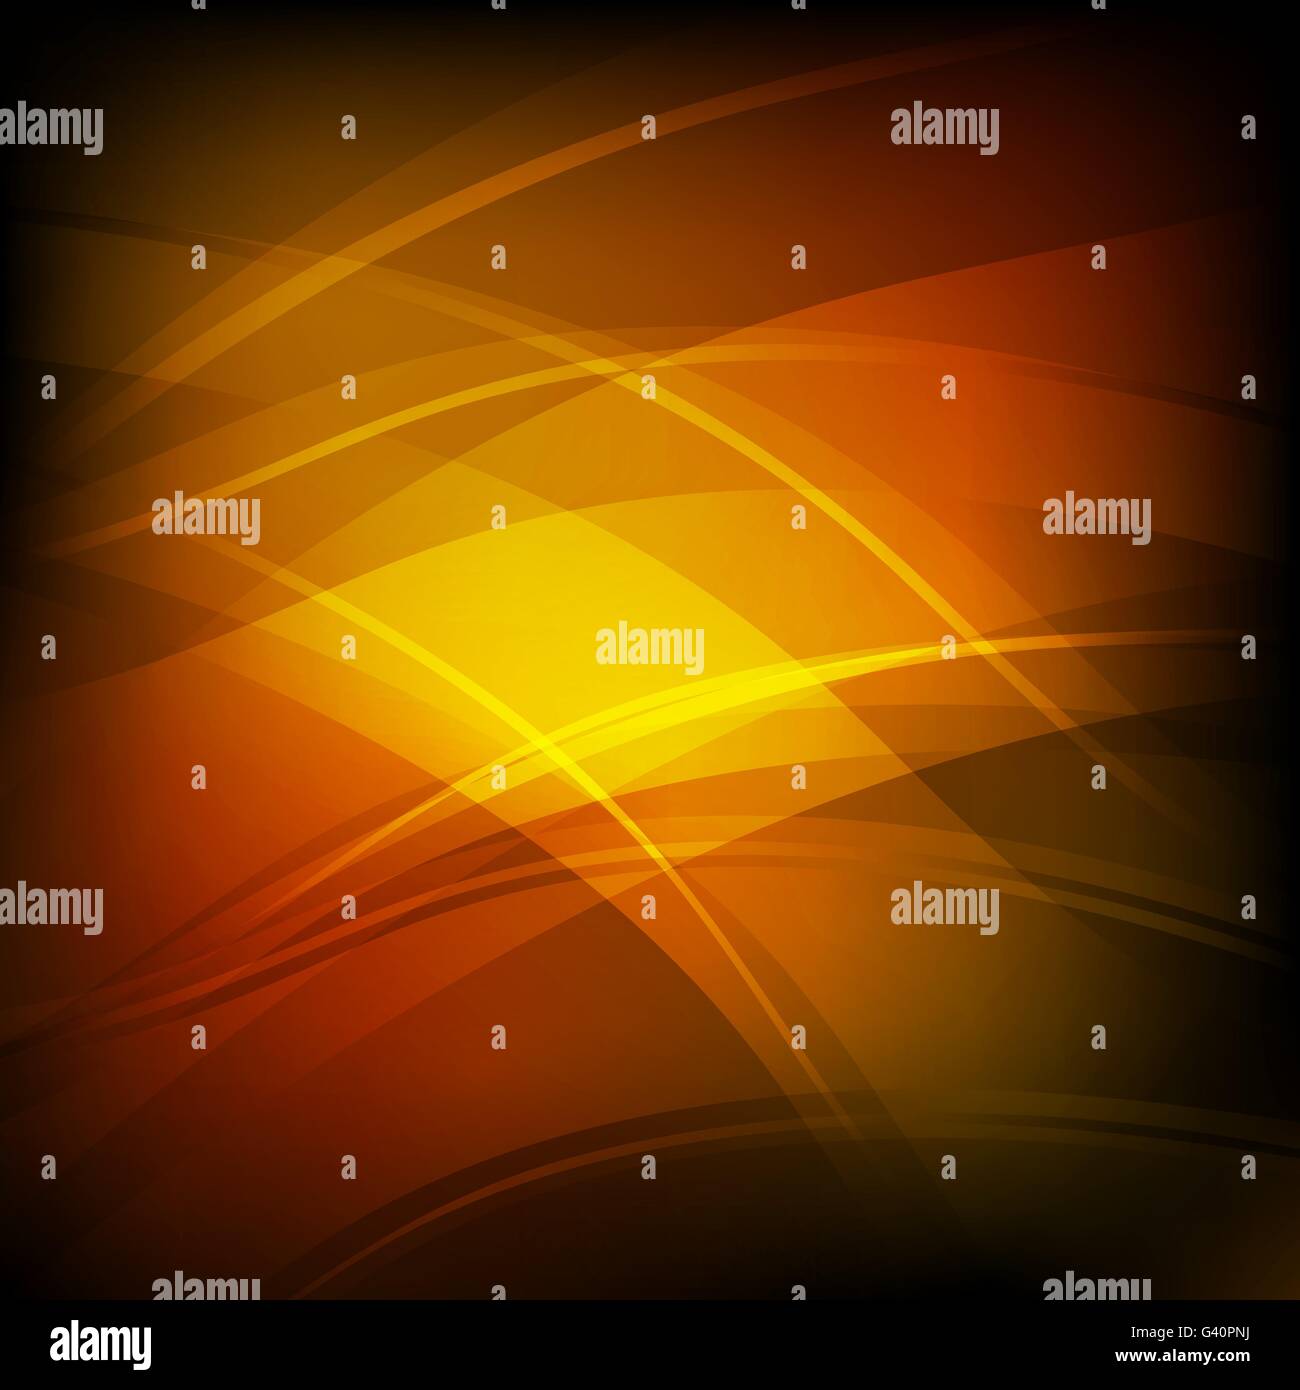 Abstract background con la linea arancione wave, vettore di stock Illustrazione Vettoriale